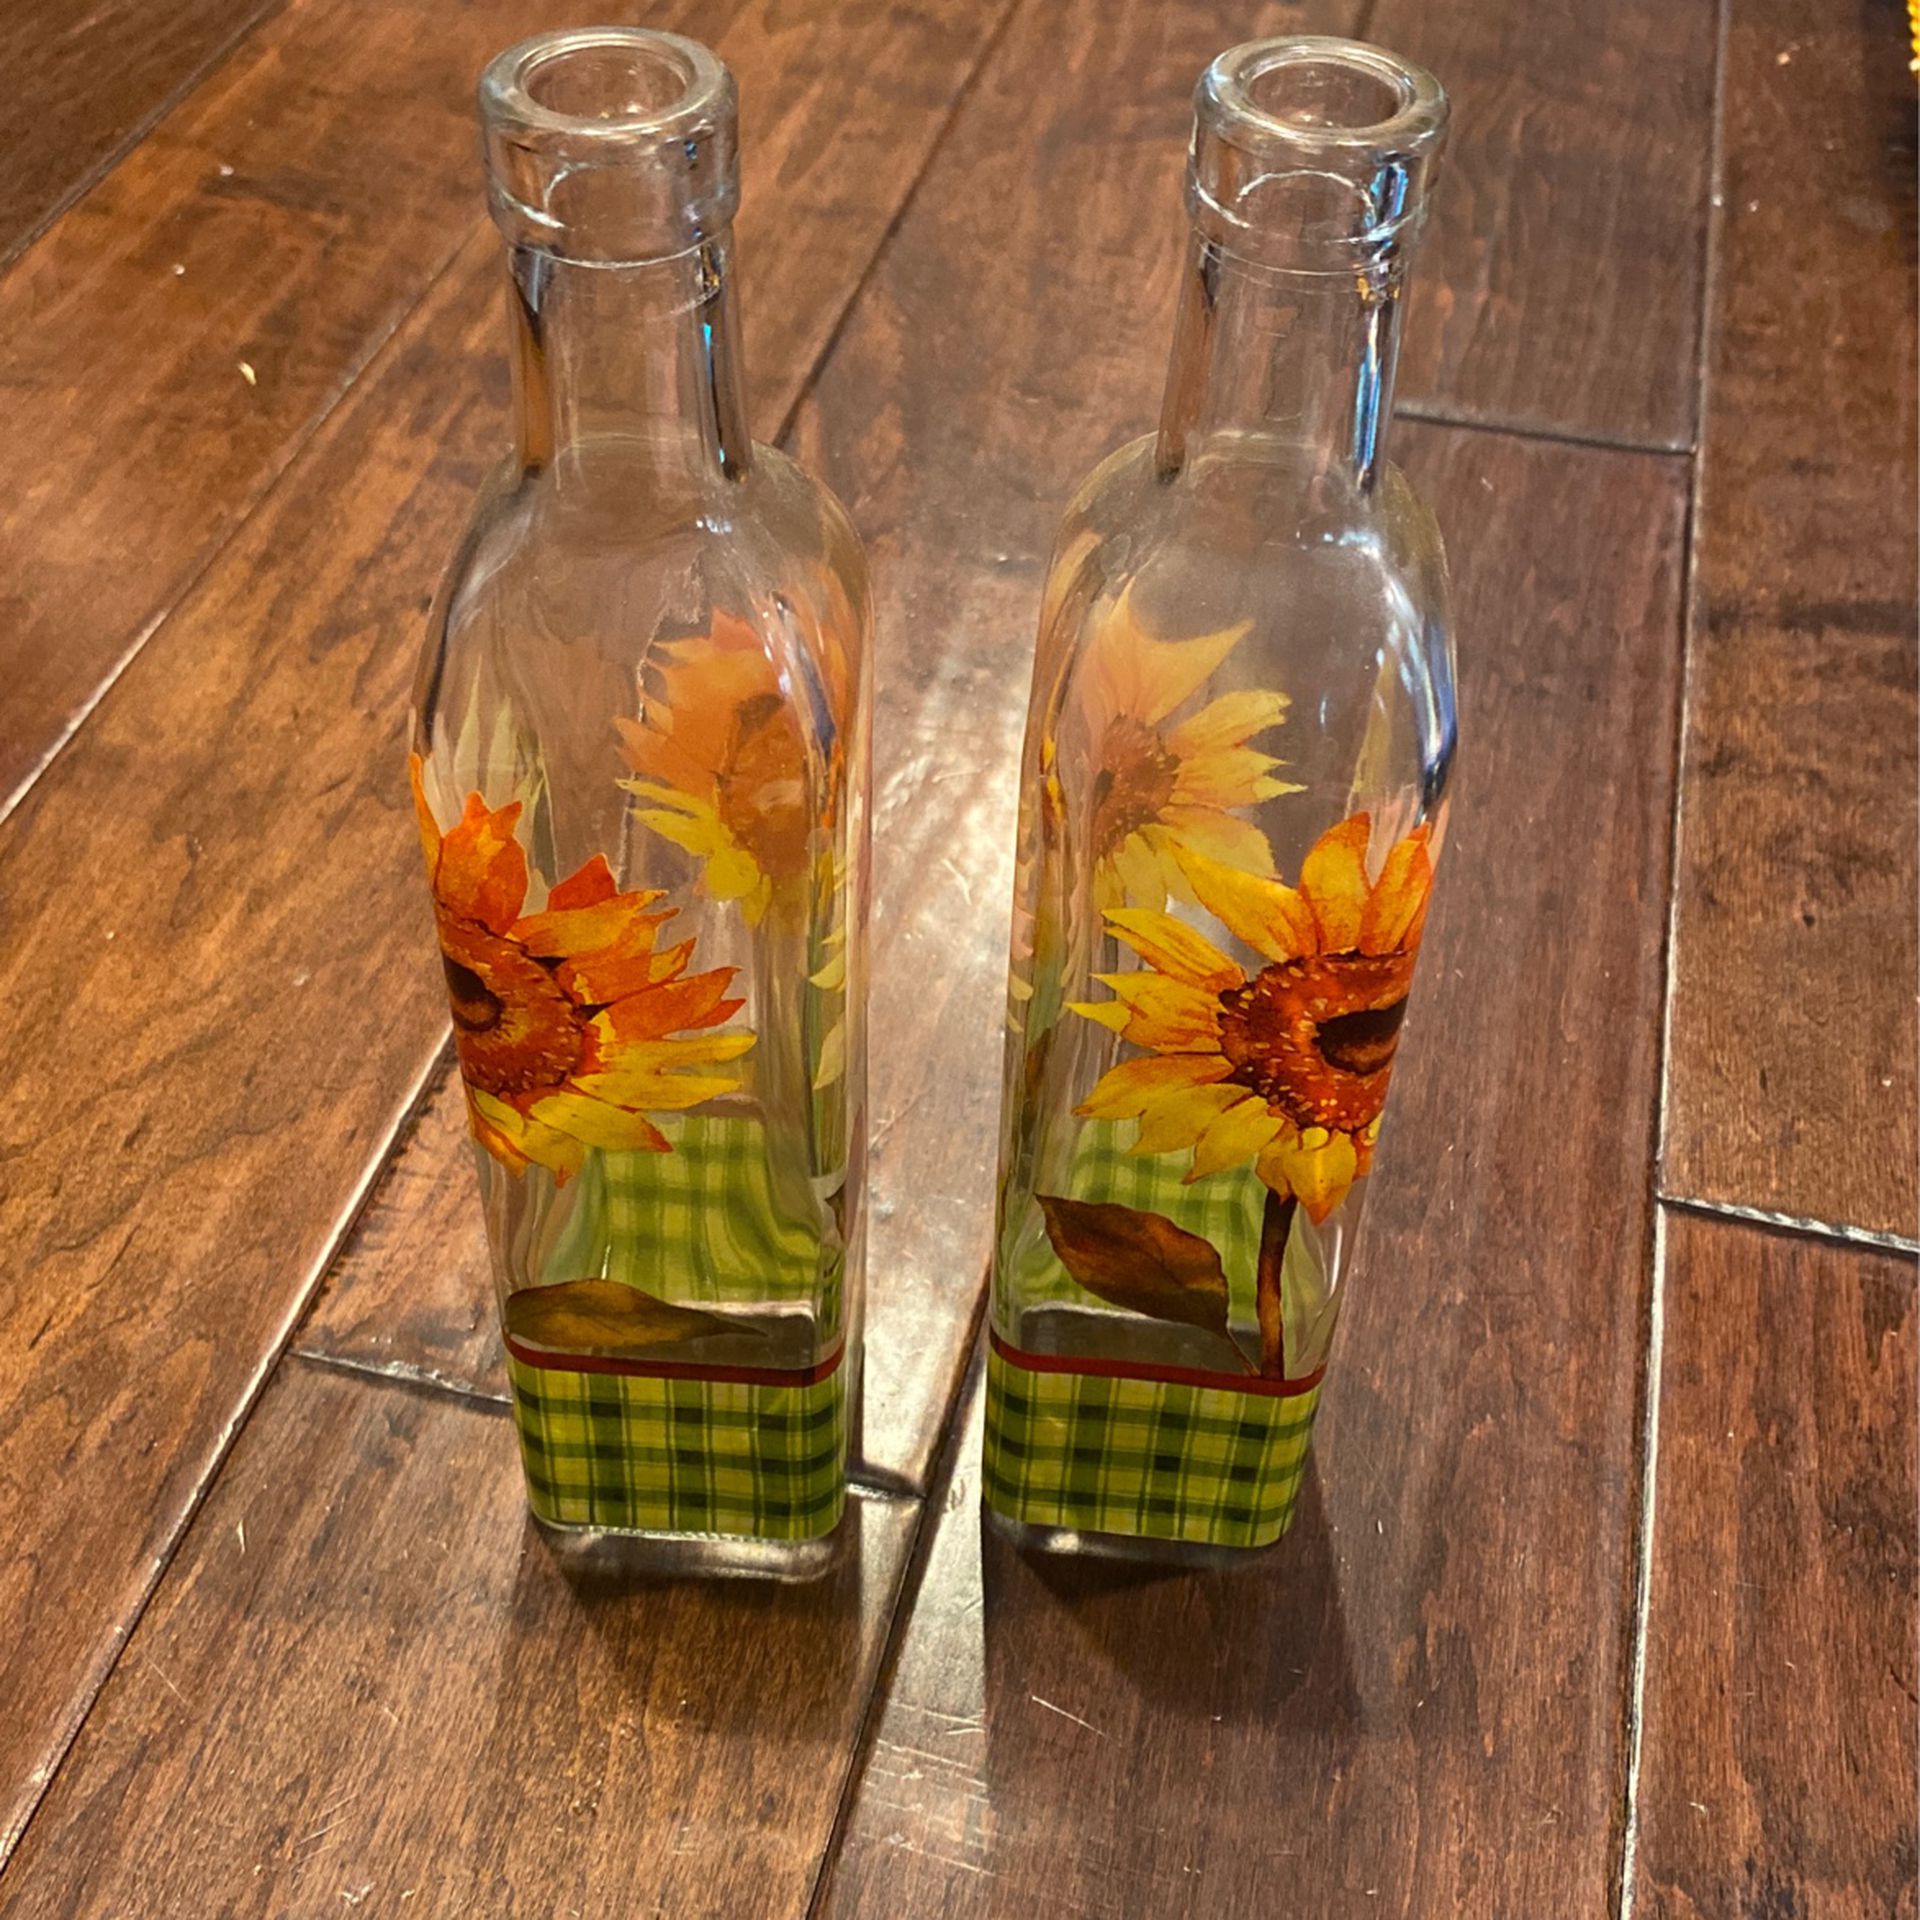 Multi Purpose Glass Bottles/Vases